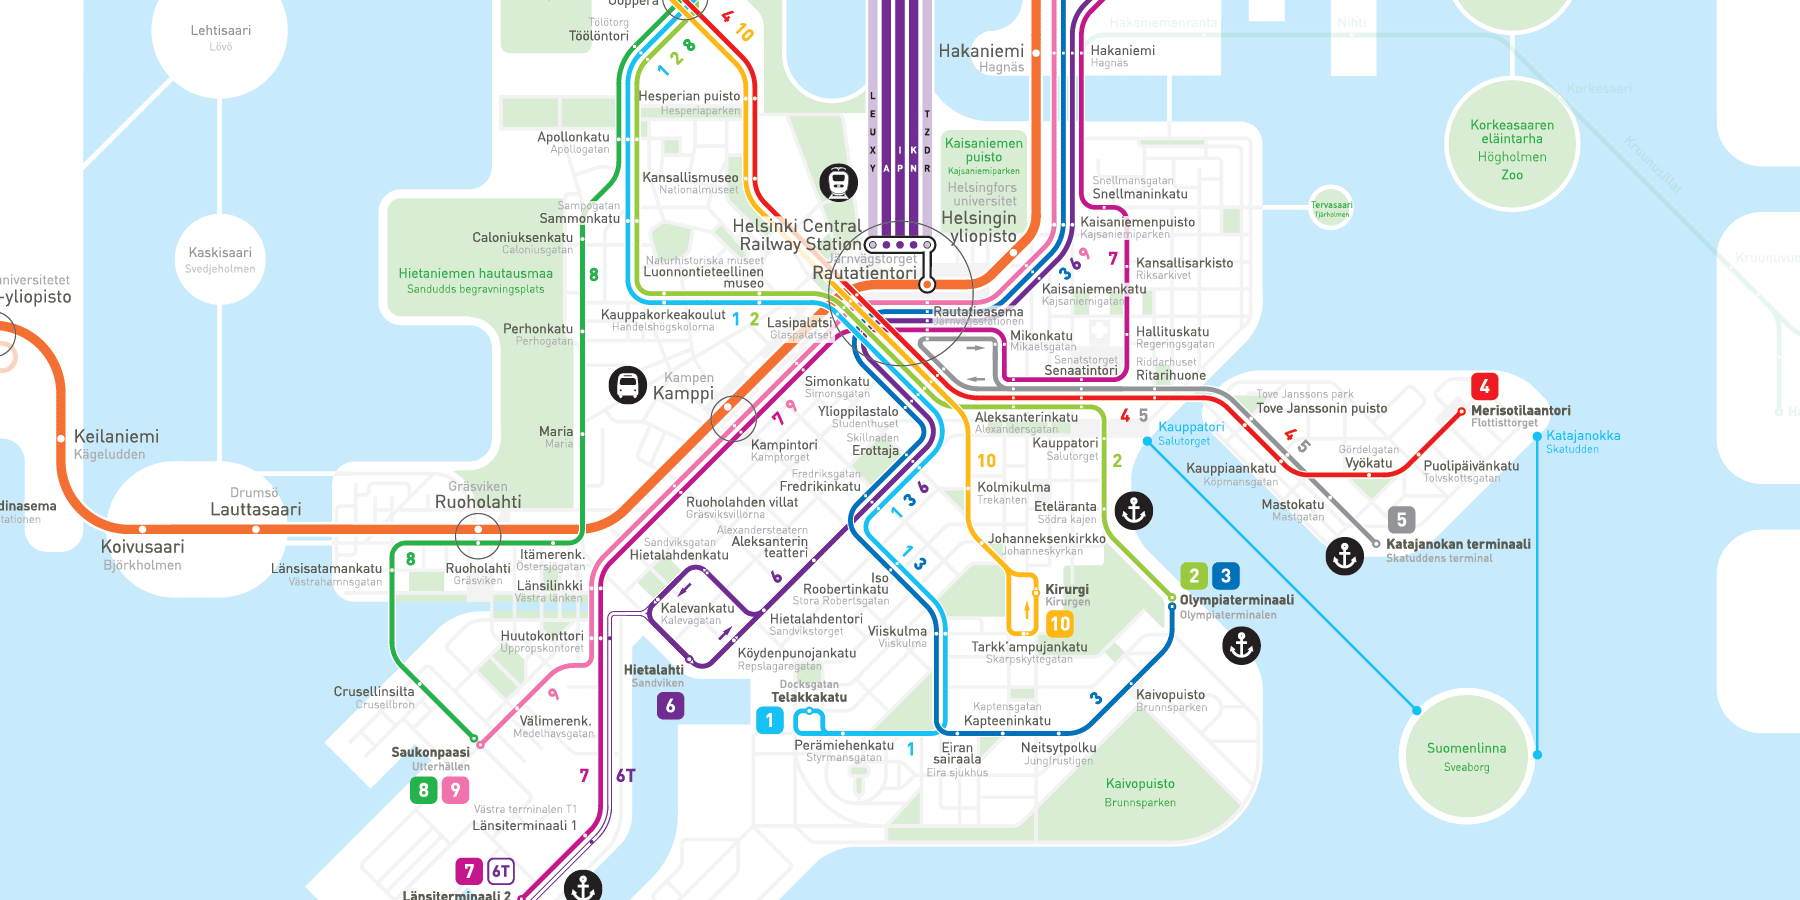 Helsinki Metro Map